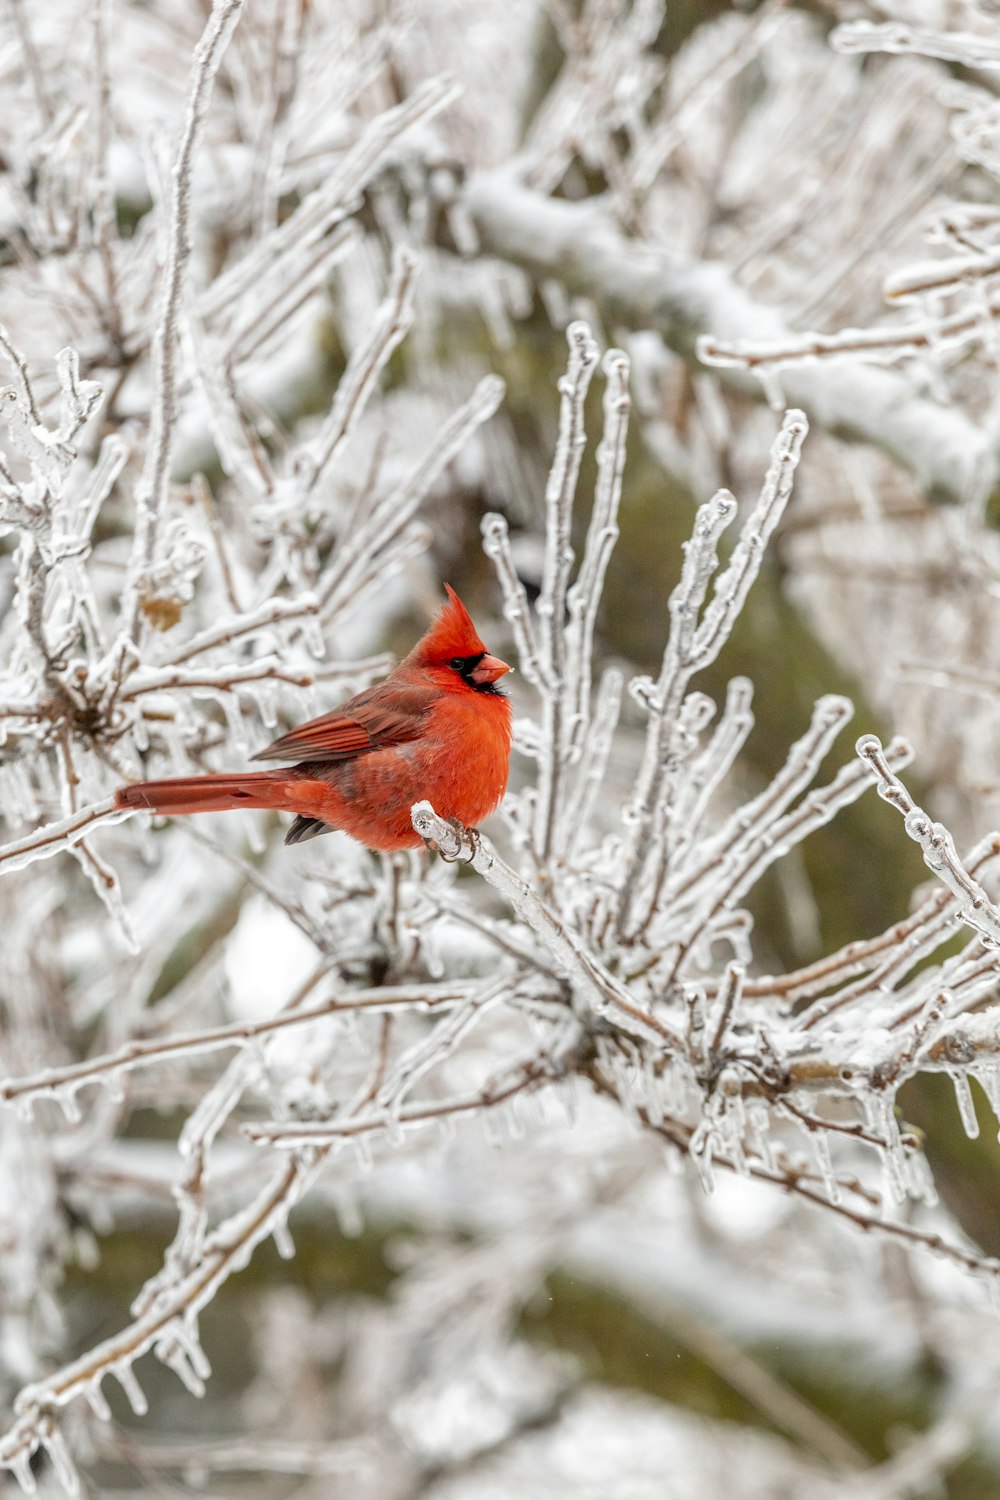 pássaro cardinal vermelho empoleirado no galho marrom da árvore durante o dia